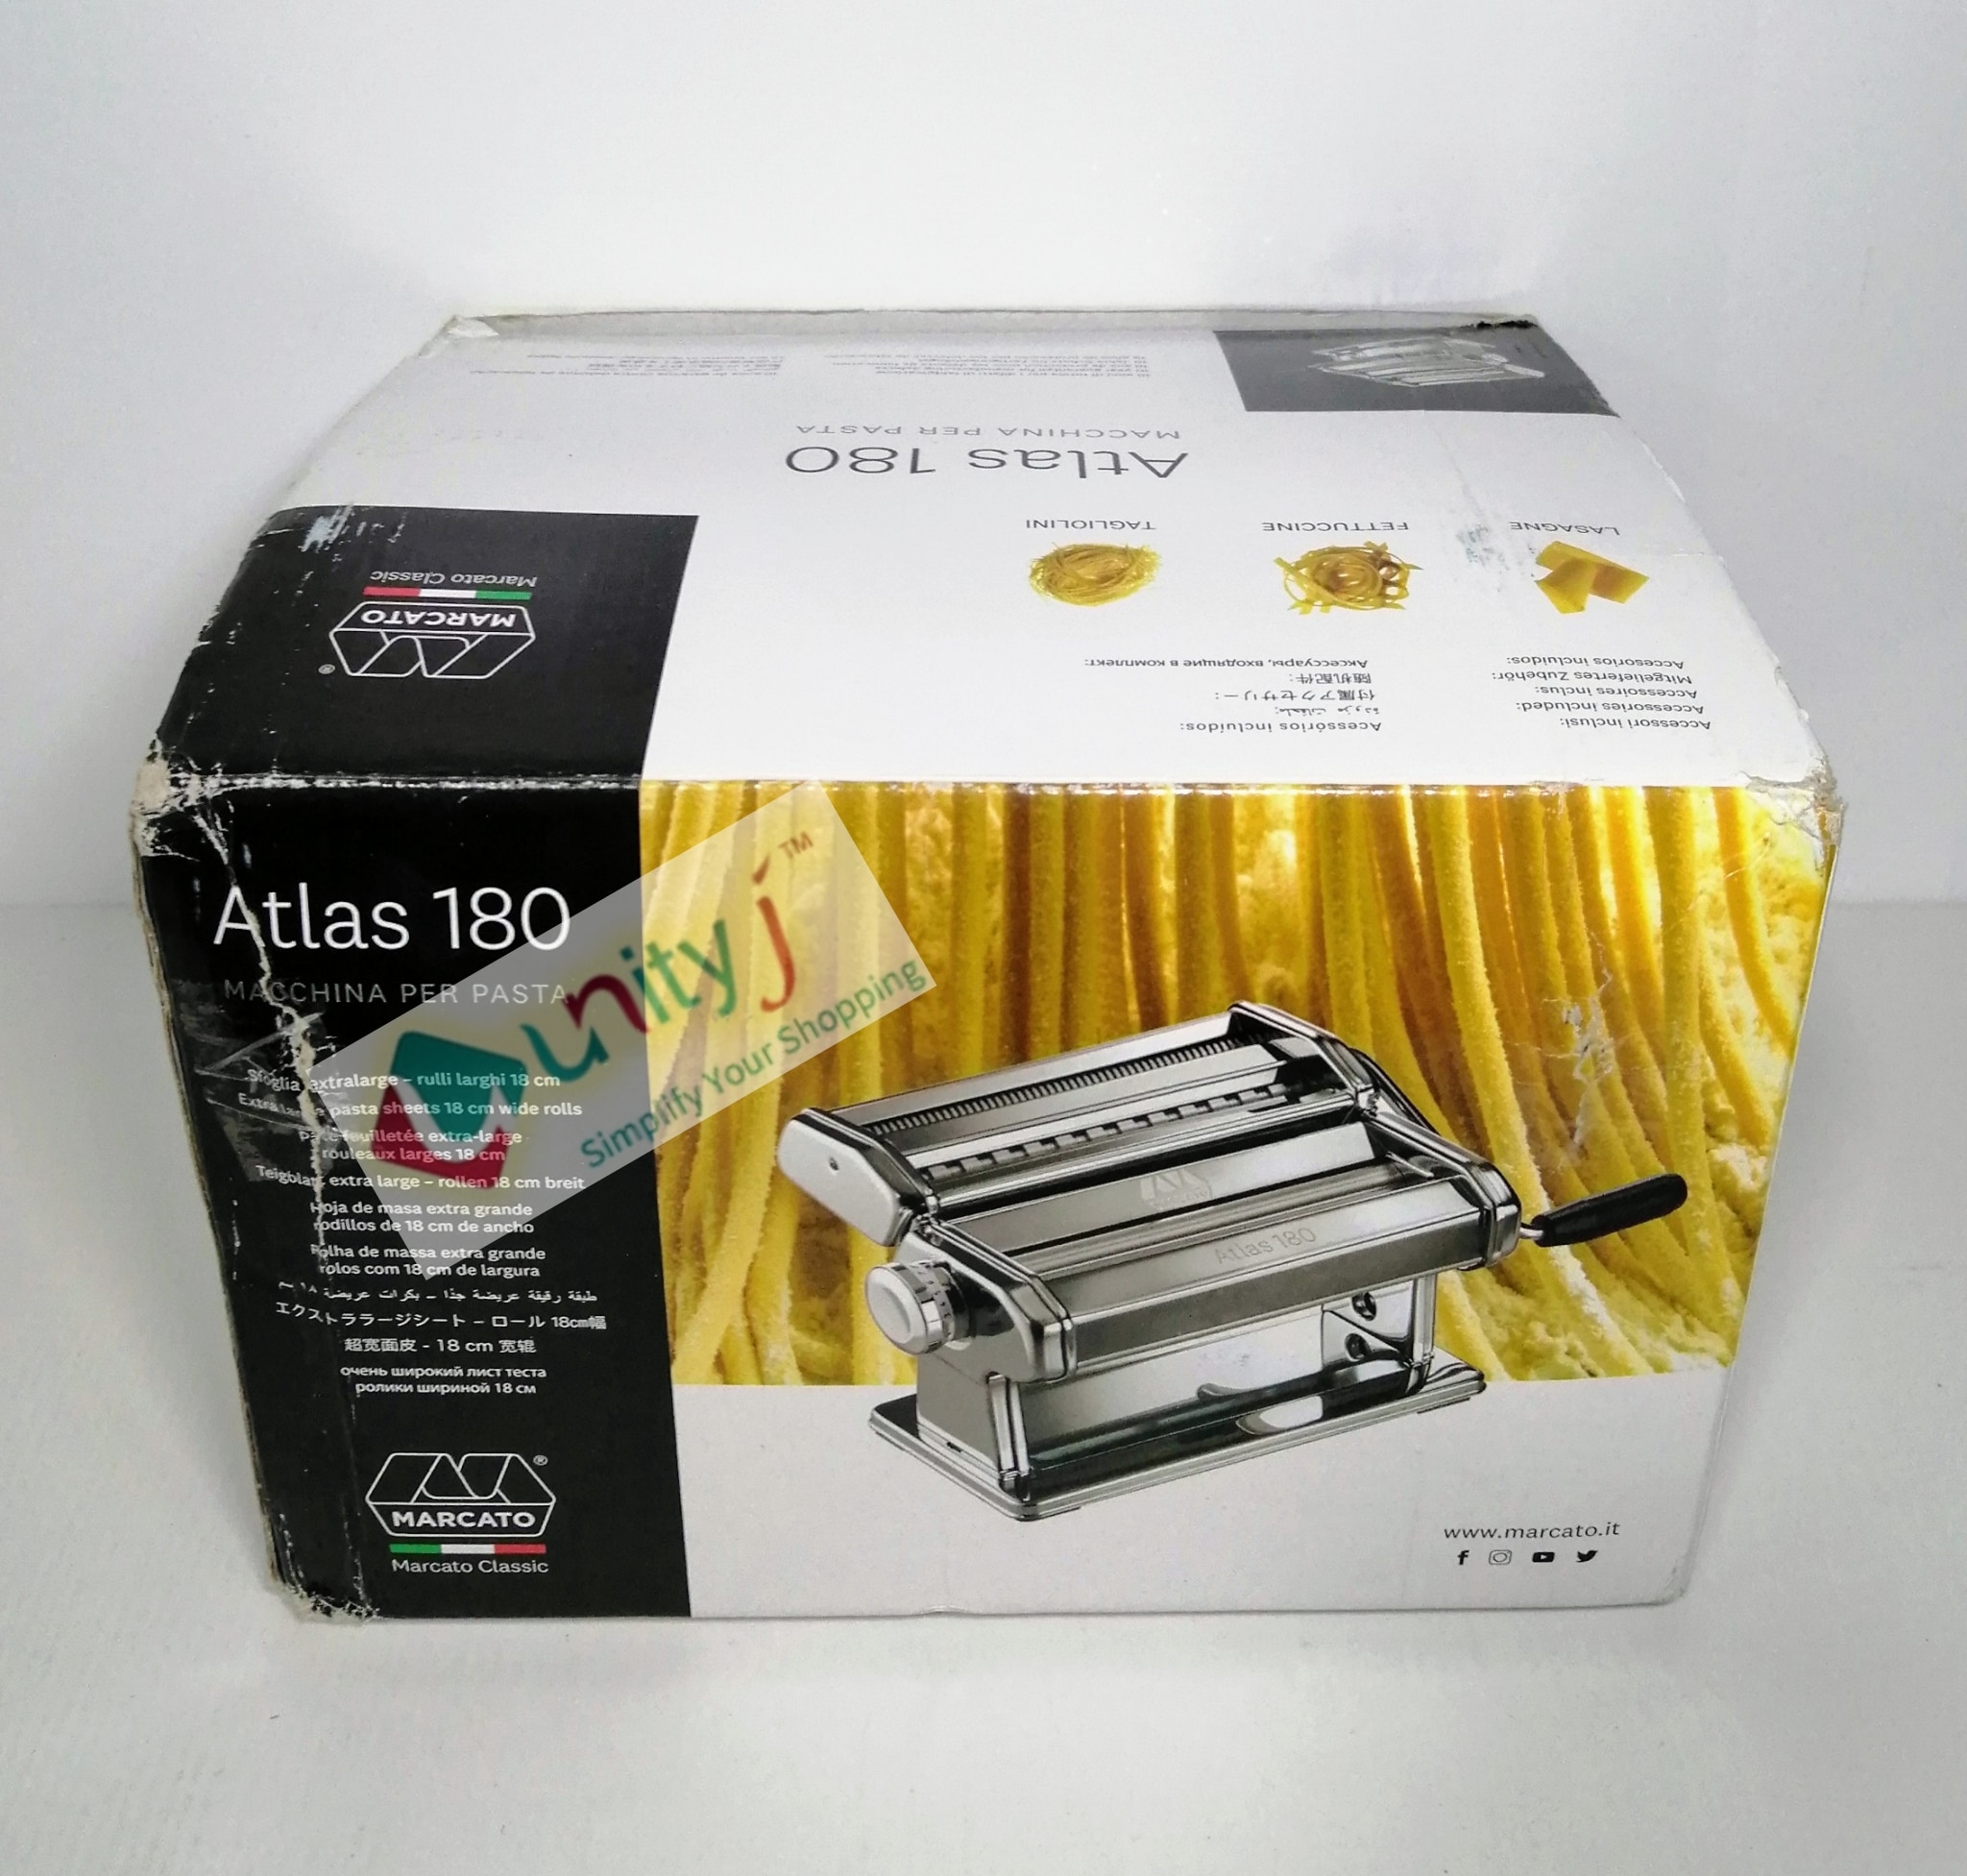 Marcato Atlas 180 Macchina Per Pasta Machine Chrome – Tavola